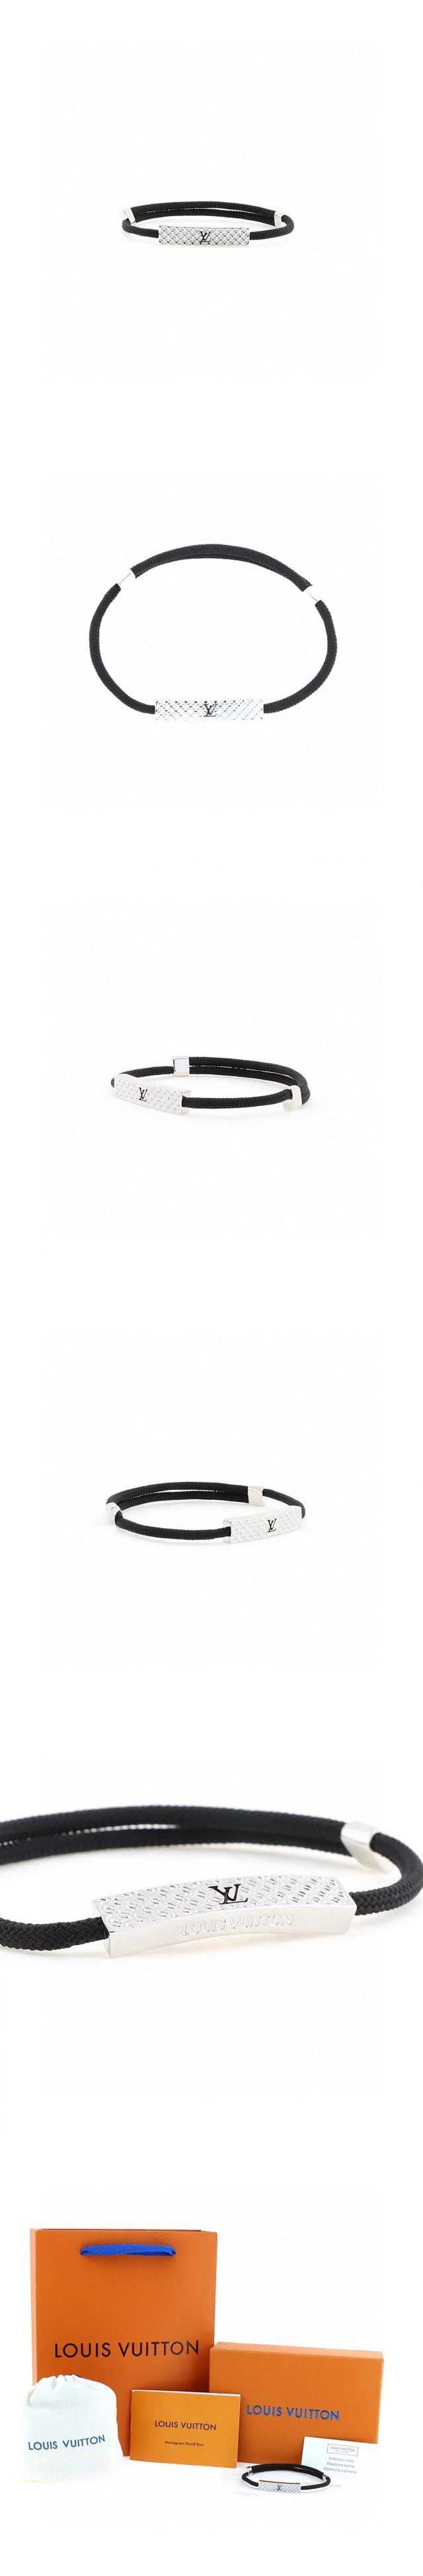 Louis Vuitton Bracelet ルイヴィトン ブラスレ シャンゼリゼ ブレスレット ブラック